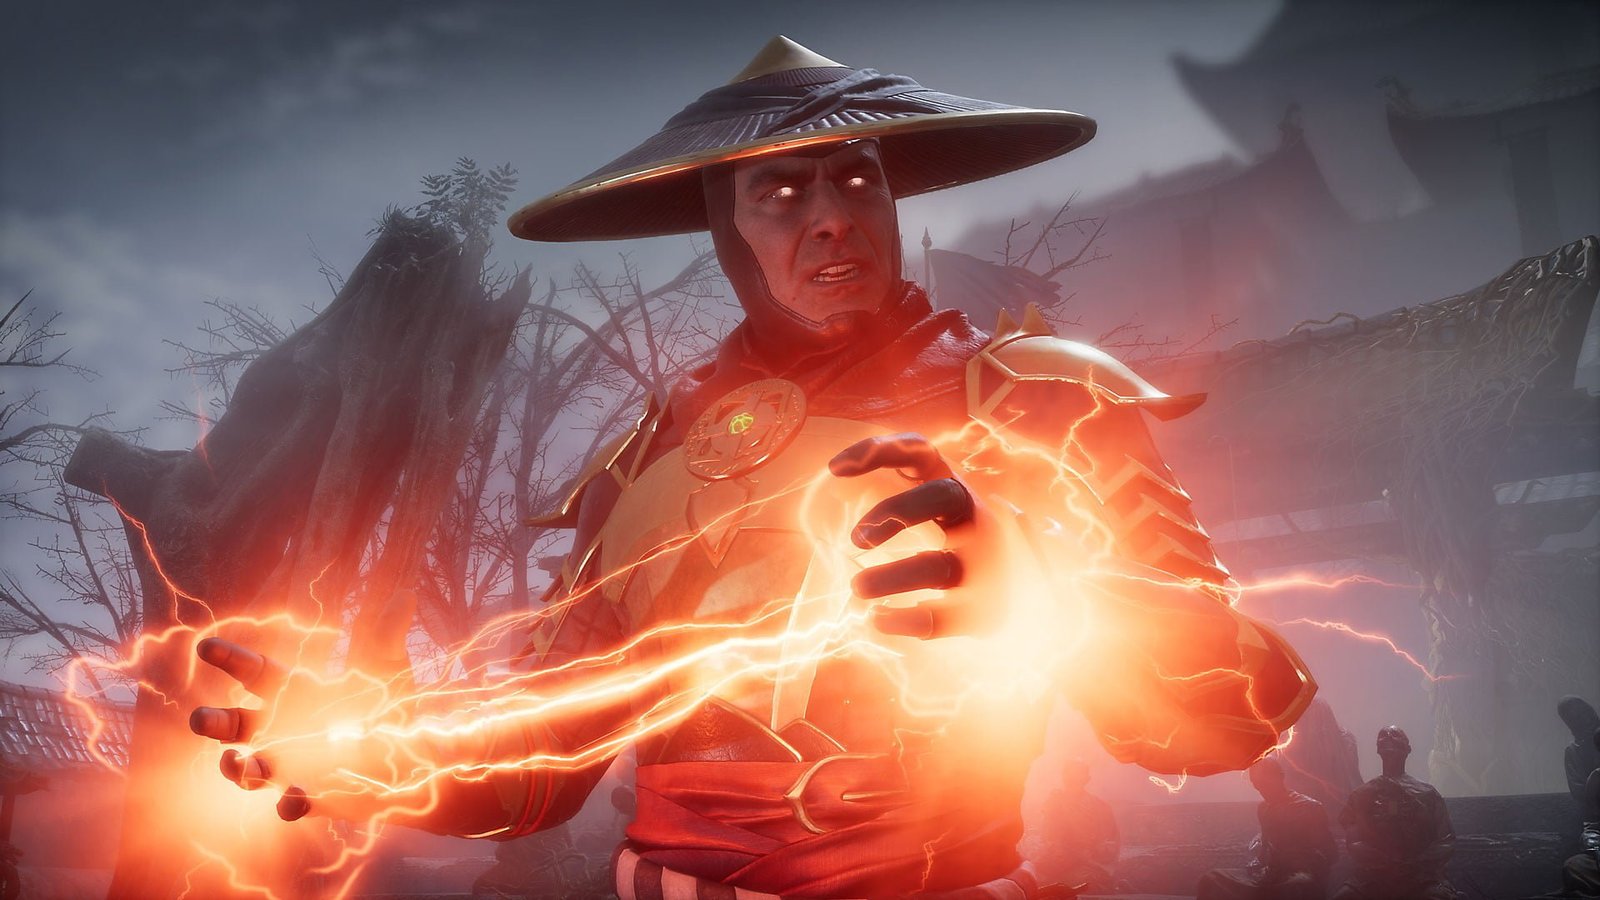 Mortal Kombat X traz violência em gráficos detalhados e personagens inéditos